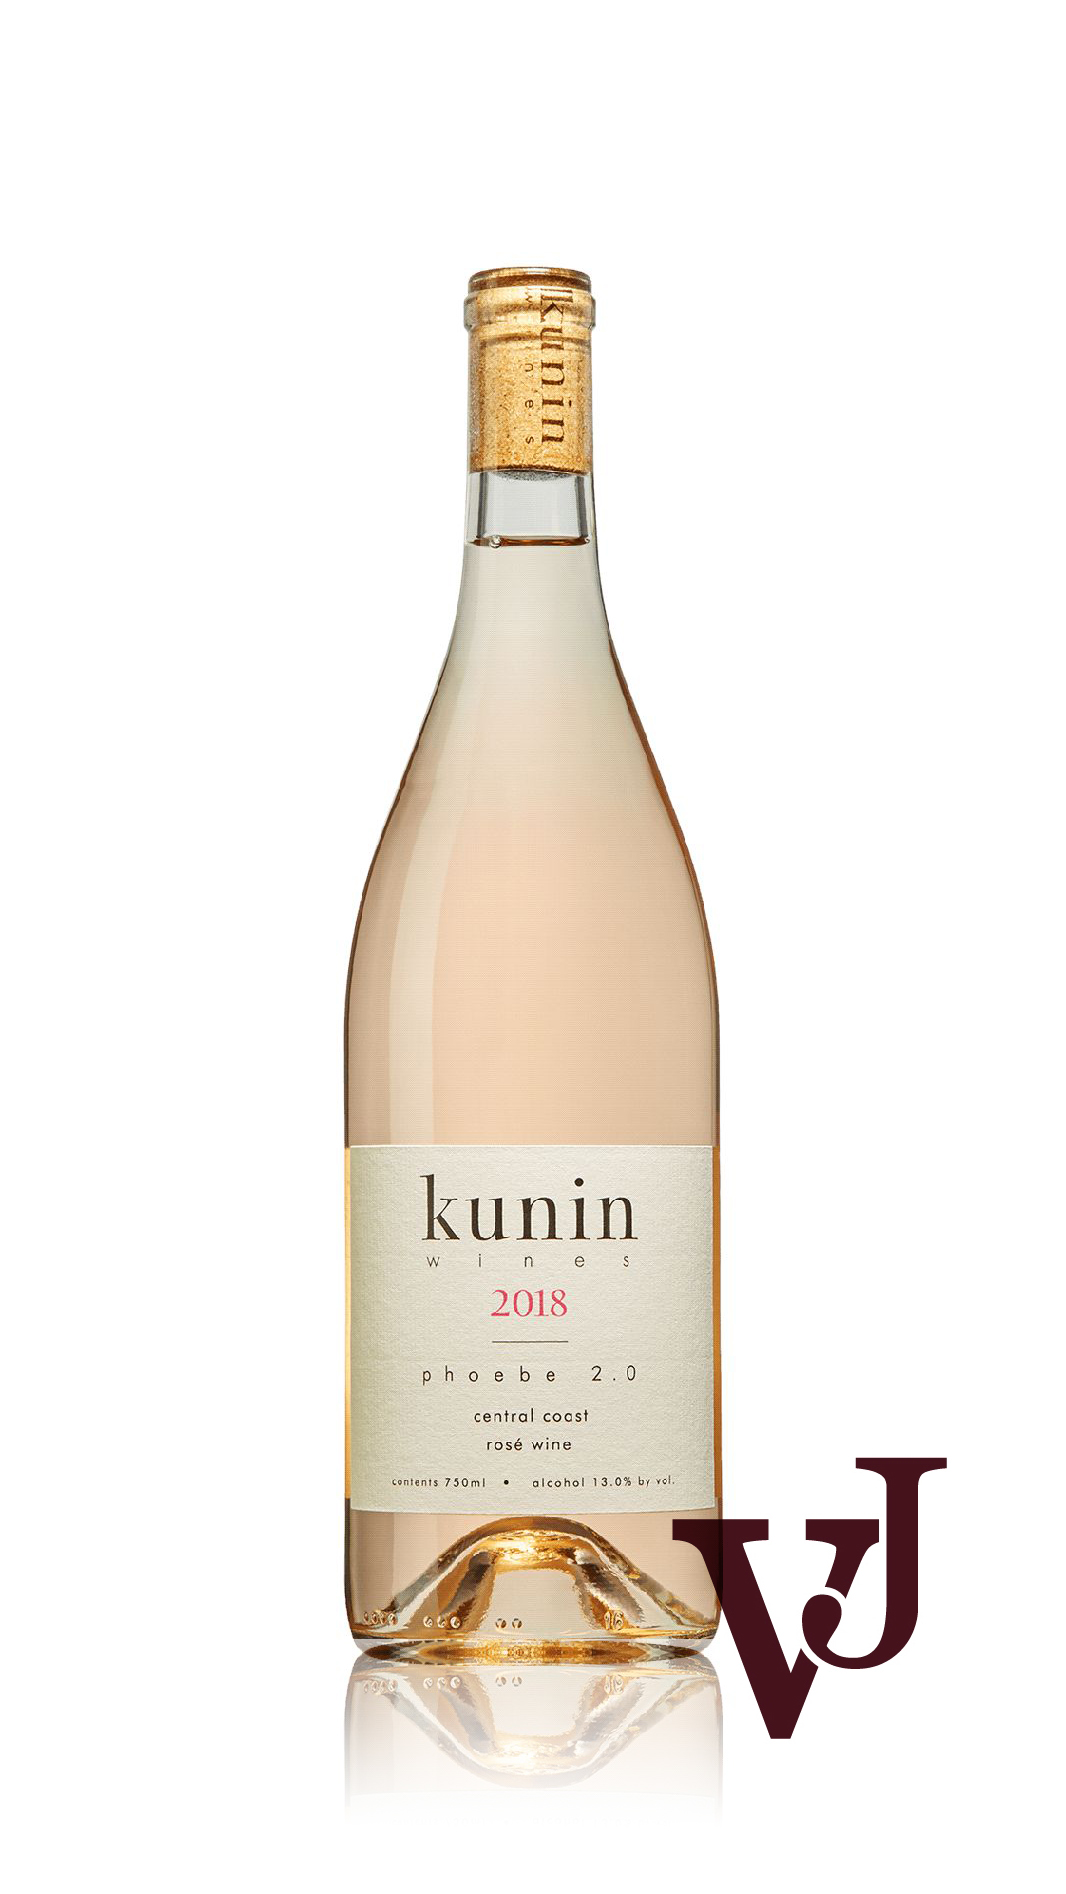 Rosé Vin - Kunin Wines Phoebe 2.0 artikel nummer 9402801 från producenten Kunin Wines från området USA